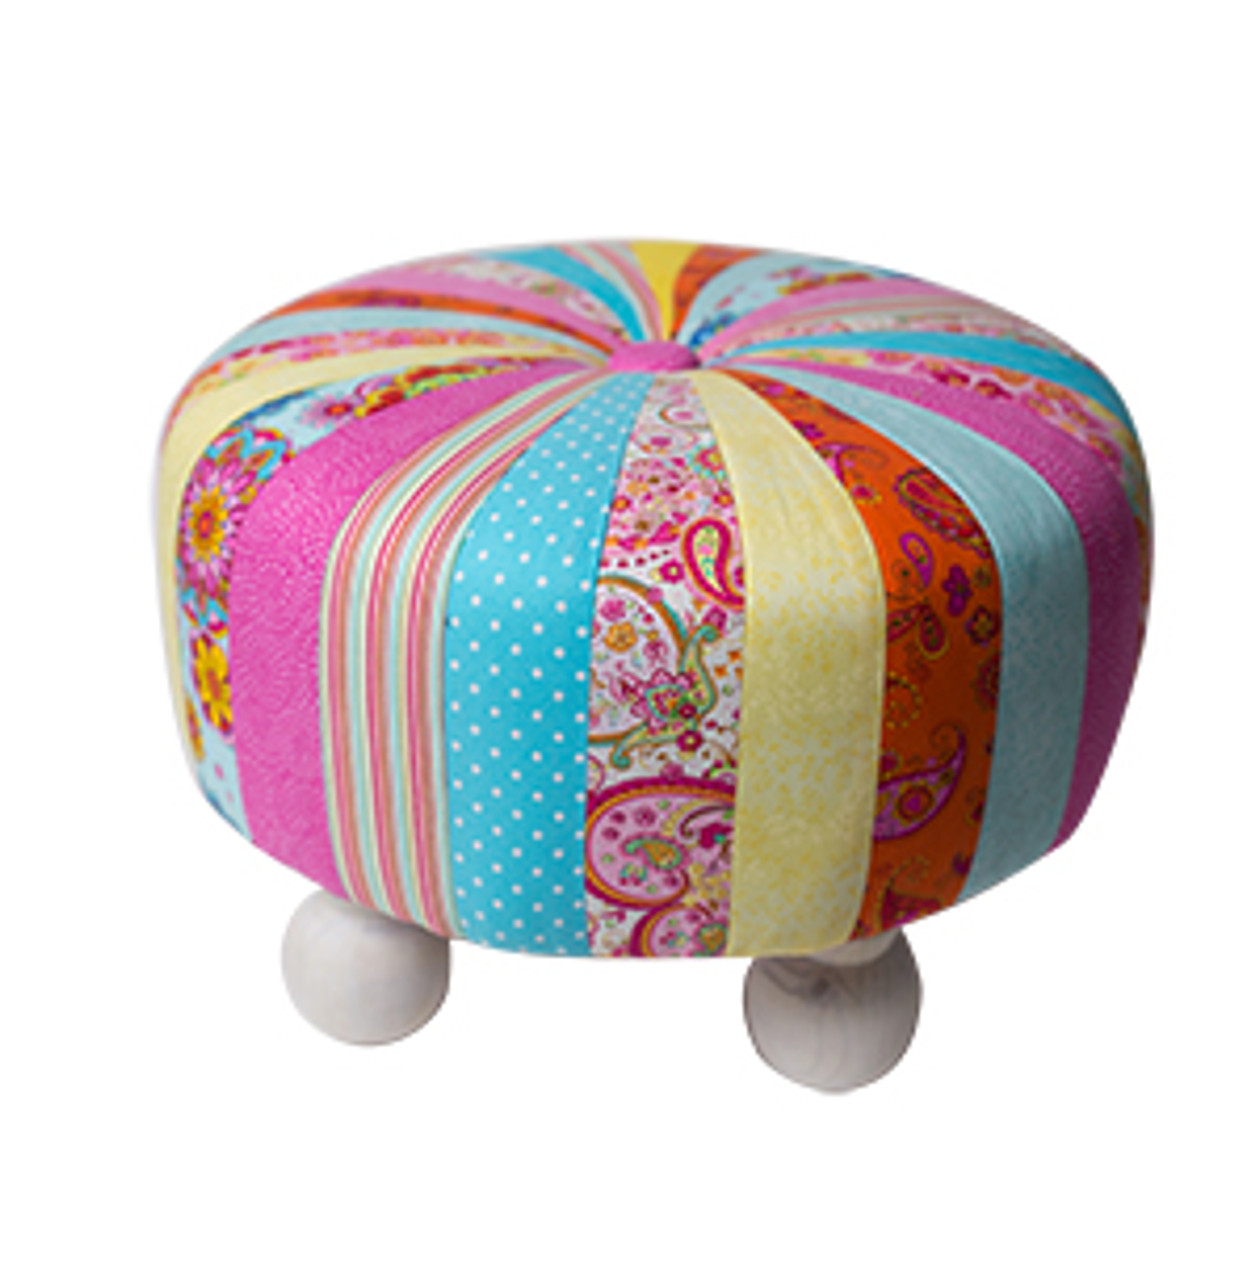 Cushion Foam Tuffet Kit by Fairfield™, 18 x 18 x 6 thick (Square) -  Fairfield World Shop